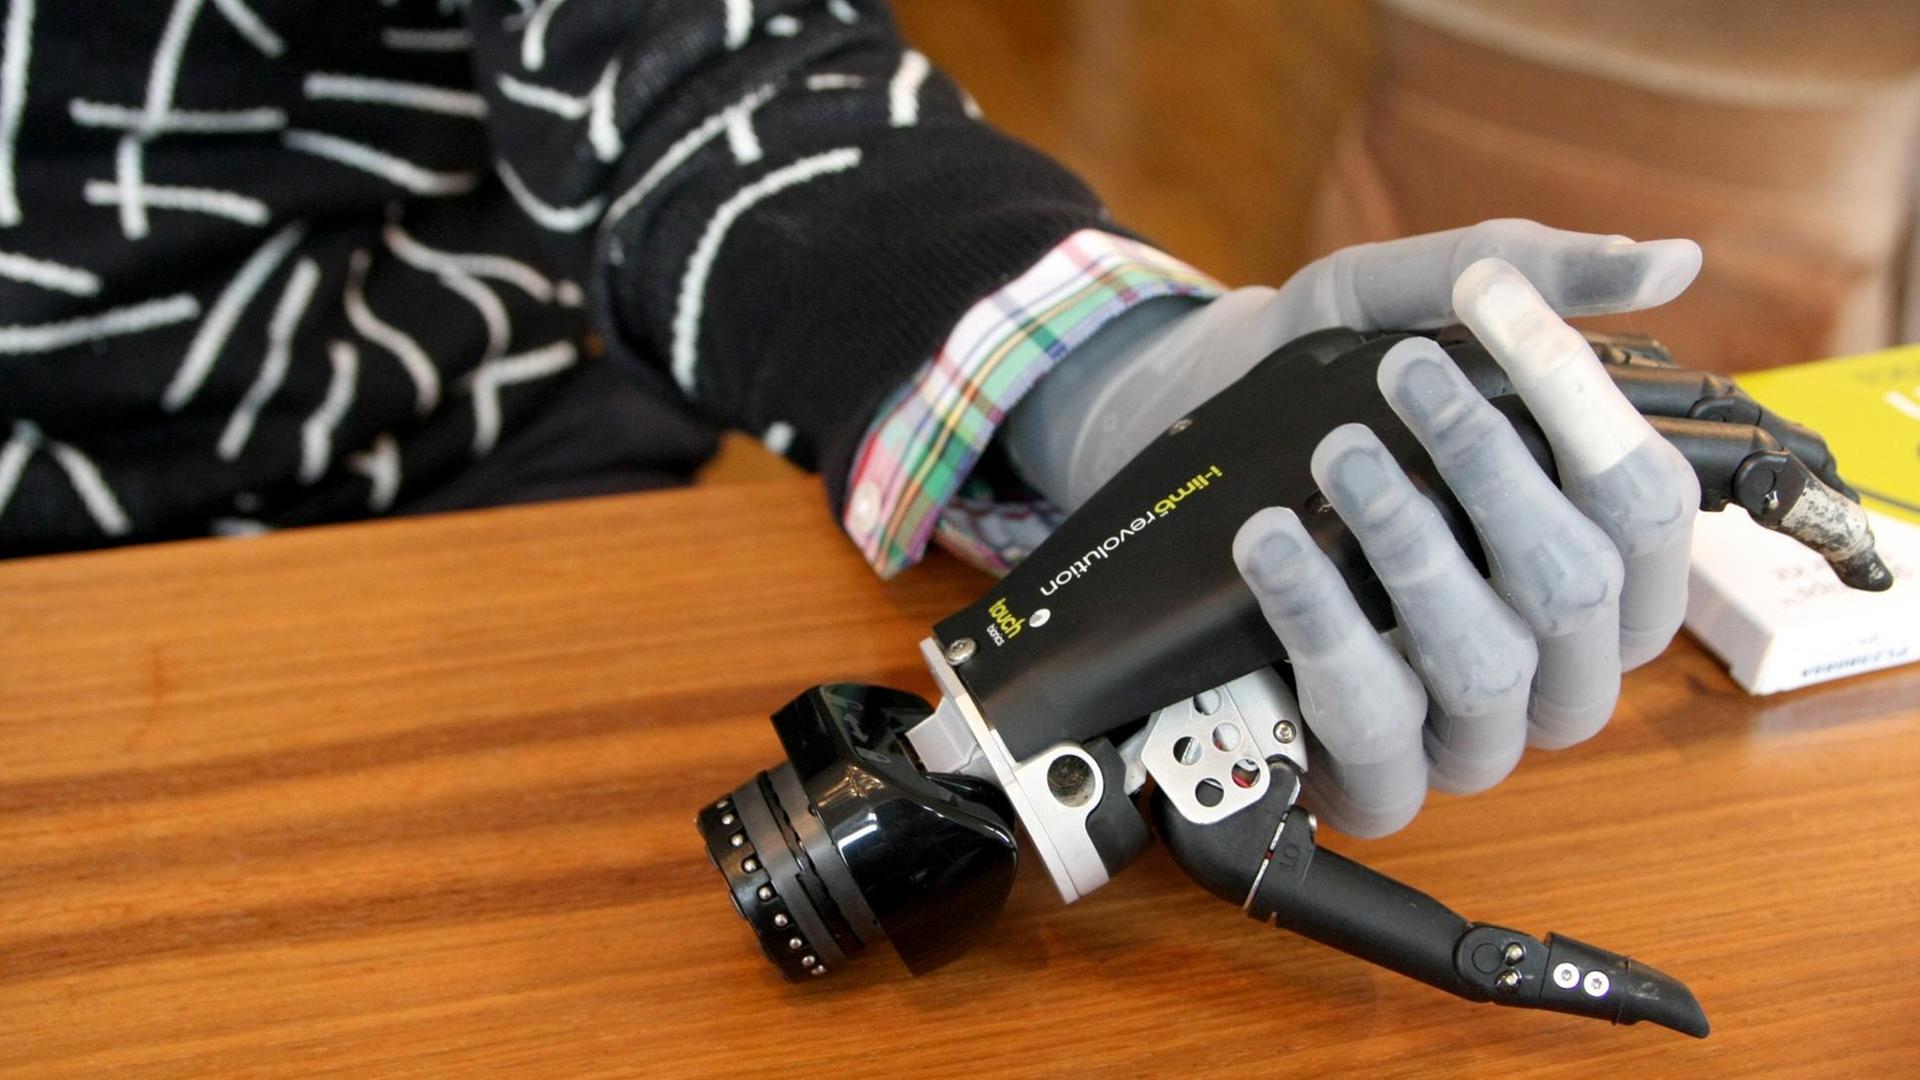 Das Foto zeigt einen Arm mit einer bionischen Handprothese, die ein weiteres Modell in der Hand hält